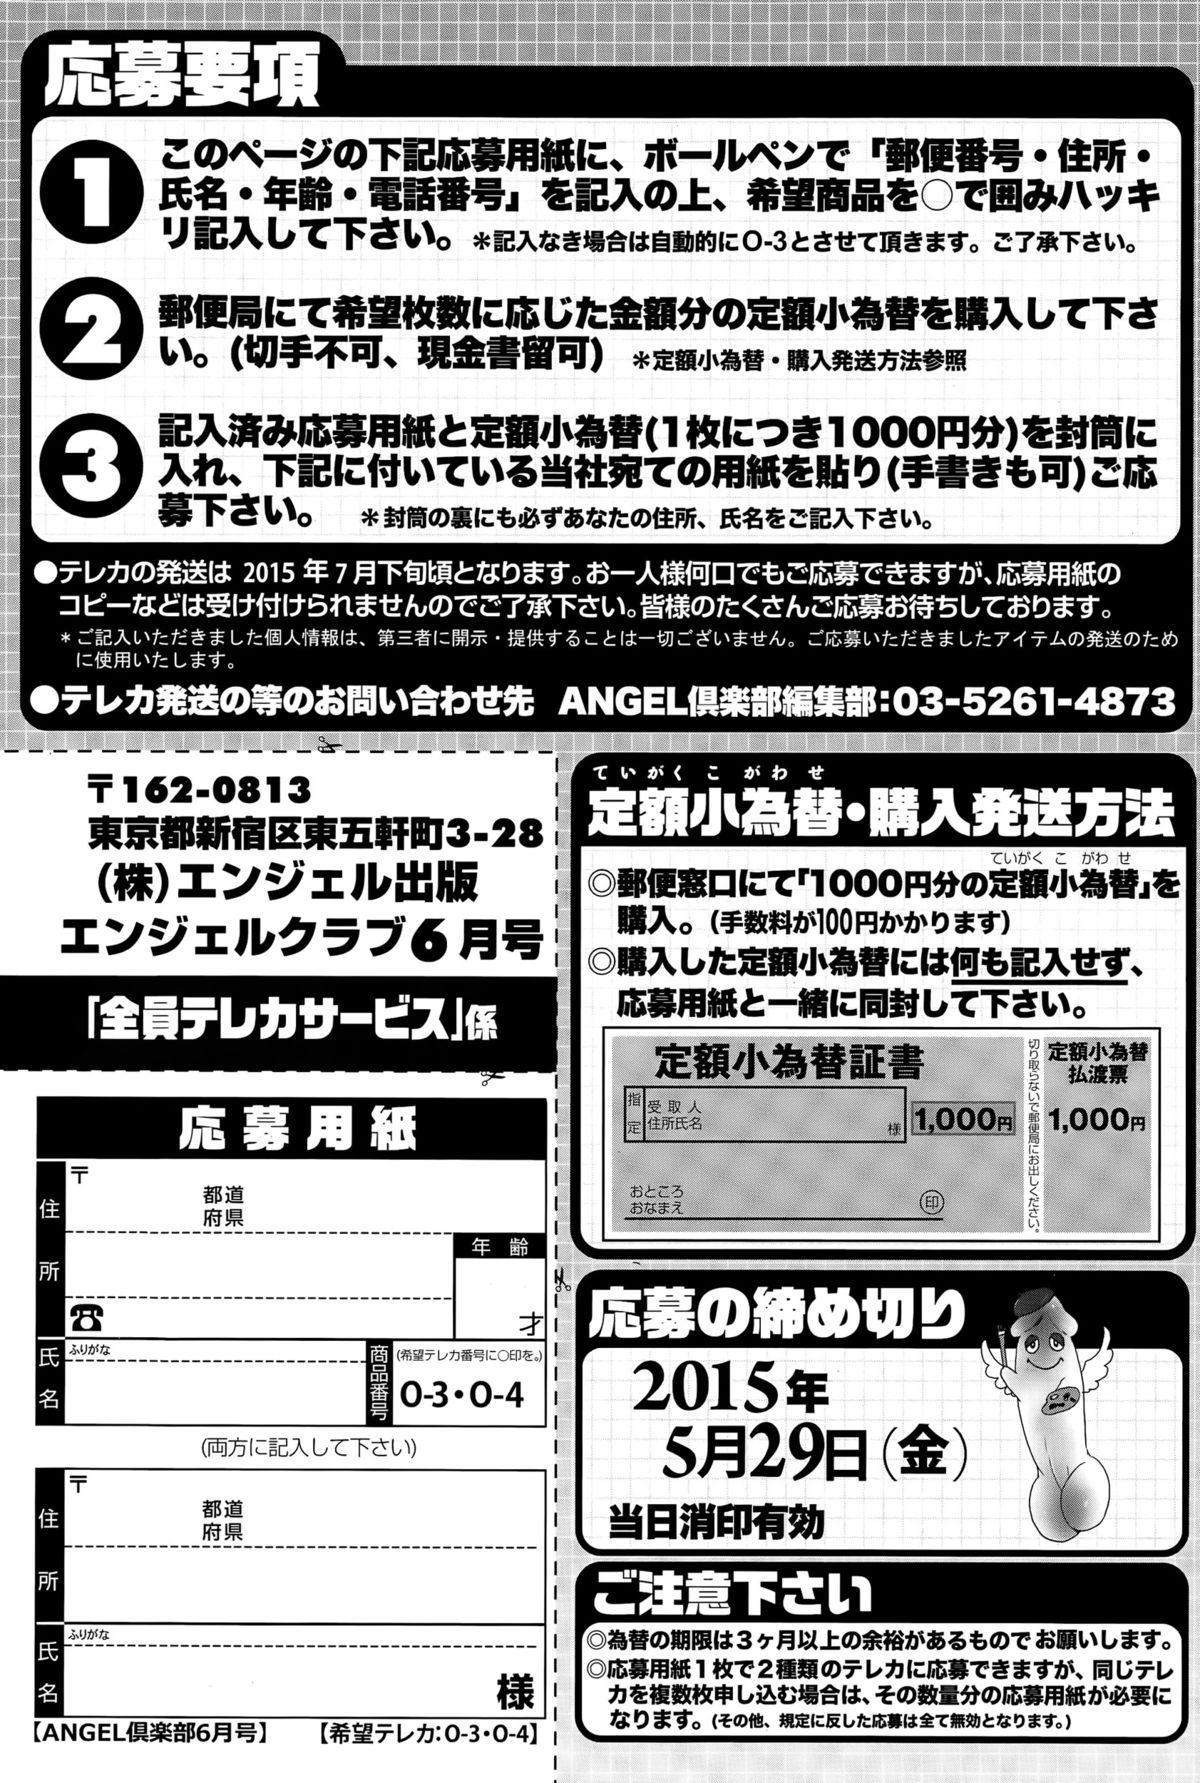 ANGEL Club 2015-06 206